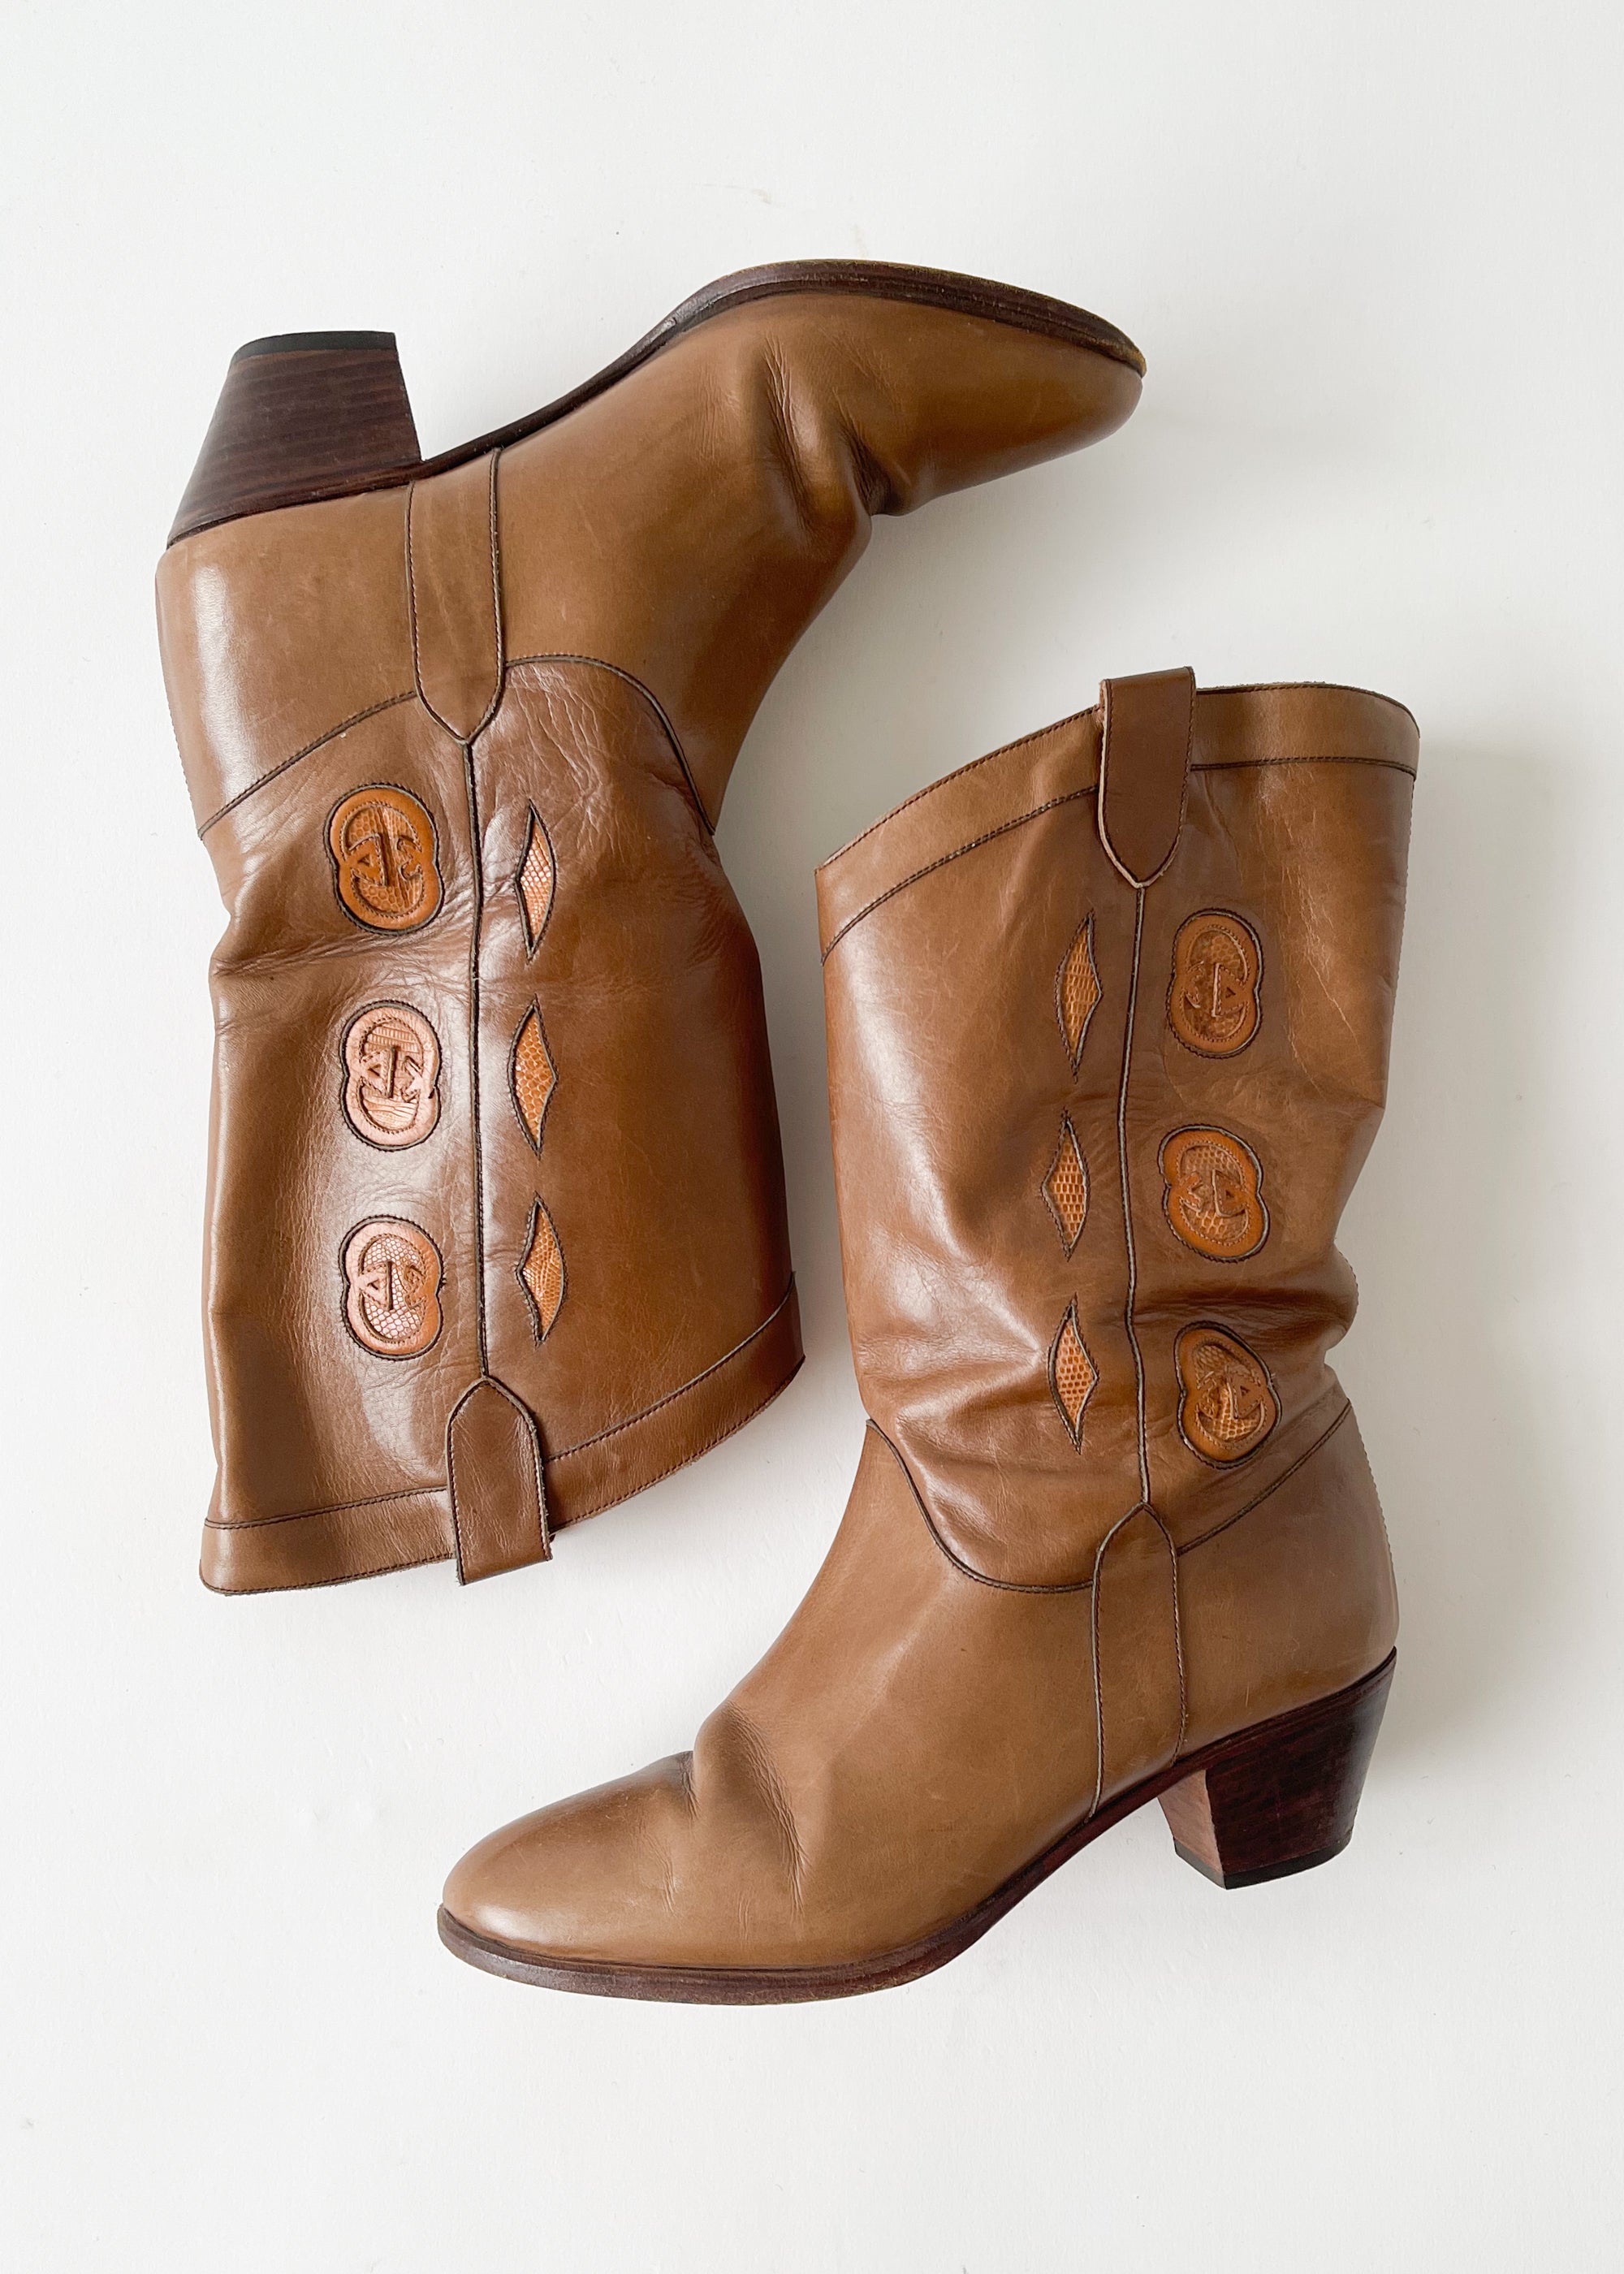 Gucci Cowboy Boots - Neutrals Boots, Shoes - GUC10289